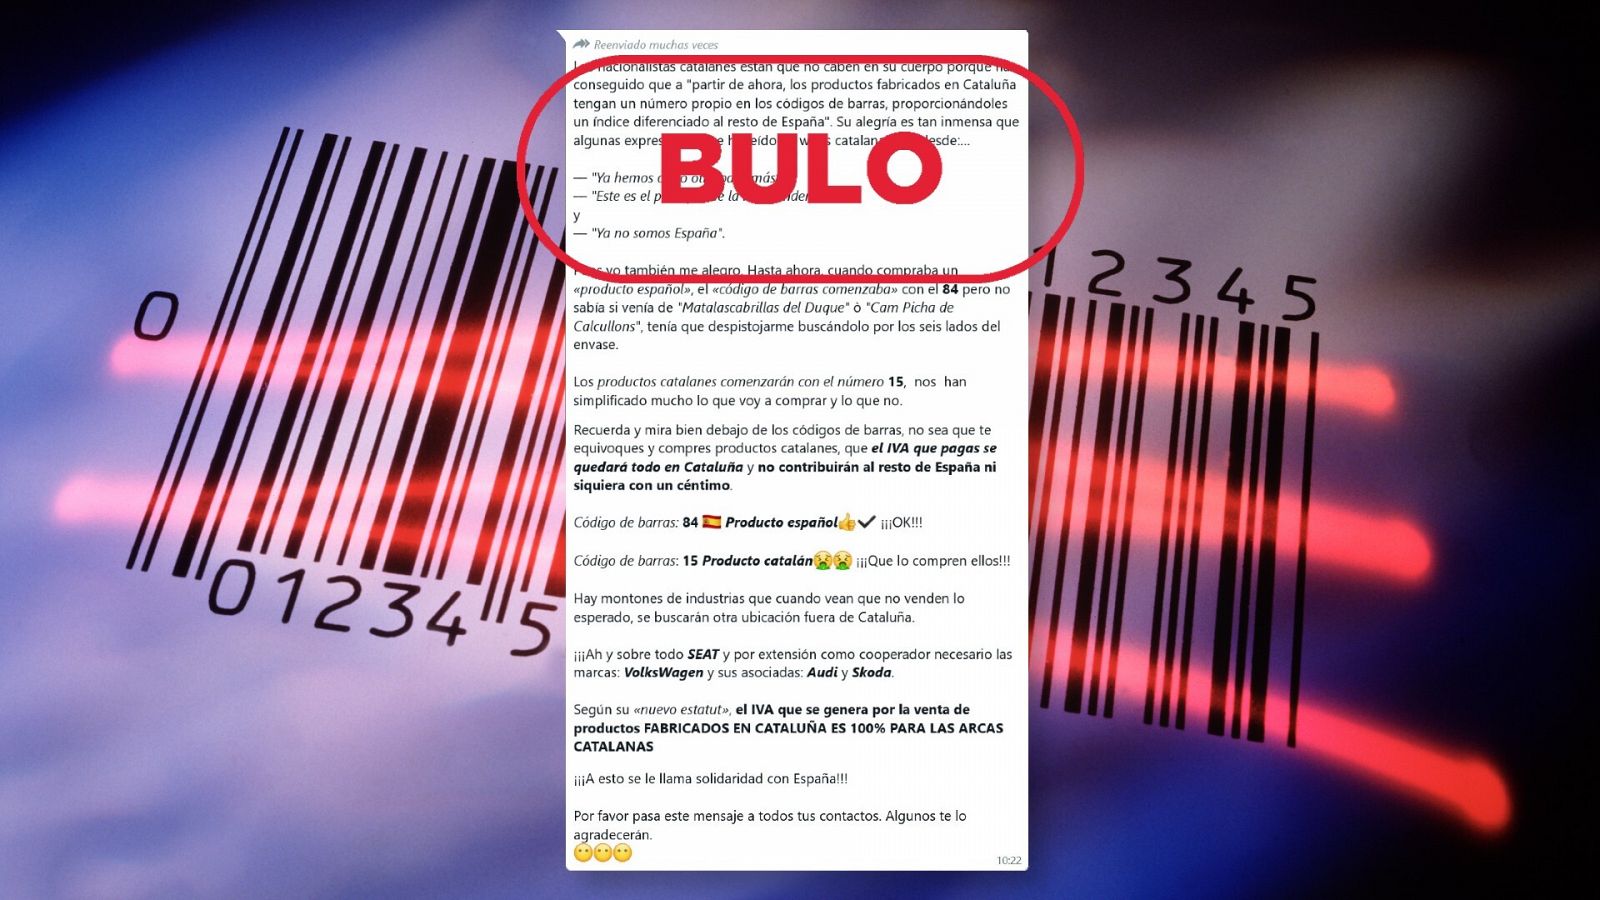 Mensaje que difunde el bulo de que los productos catalanes tienen su propio código de barras. Con el sello bulo en rojo.